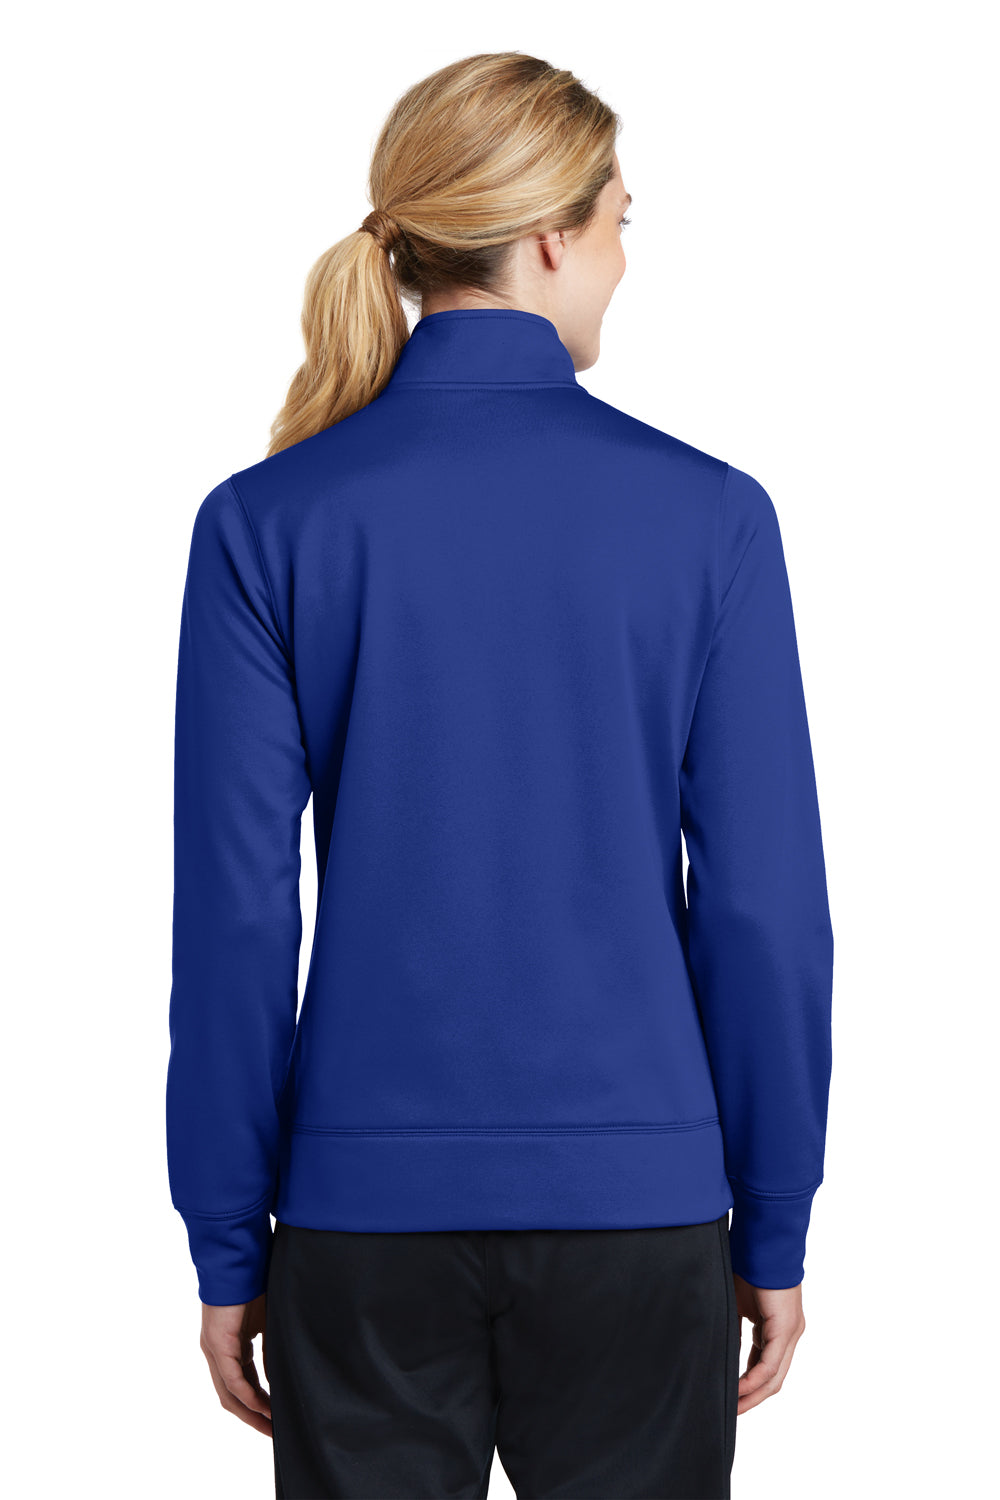 Sport-Tek LST241 Womens Sport-Wick Moisture Wicking Fleece Full Zip Sweatshirt Royal Blue Back